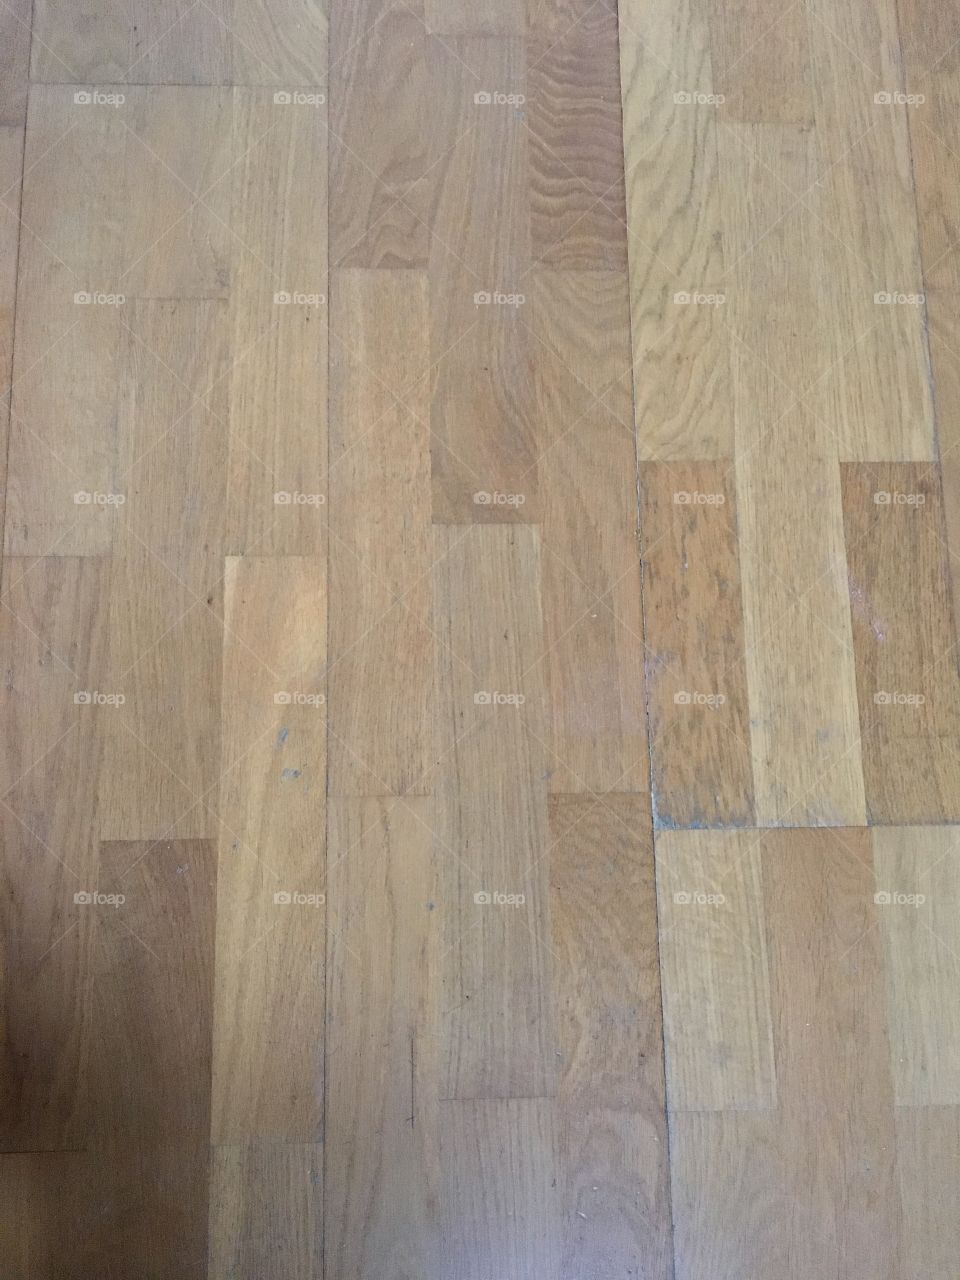 Wooden Floor planks